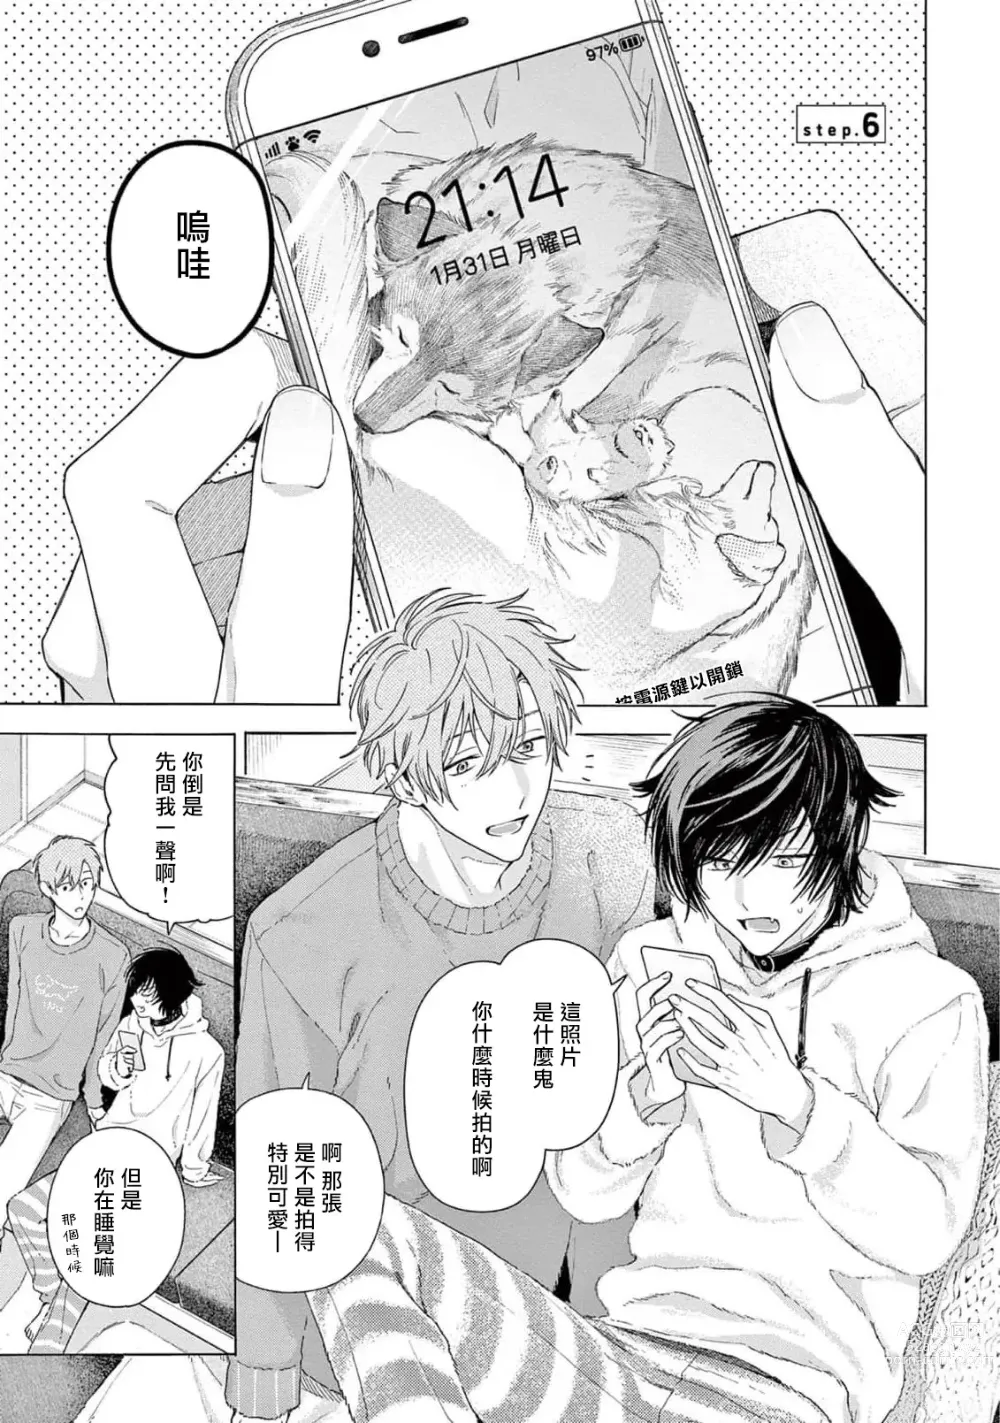 Page 5 of manga 服从与轻咬2 06-11